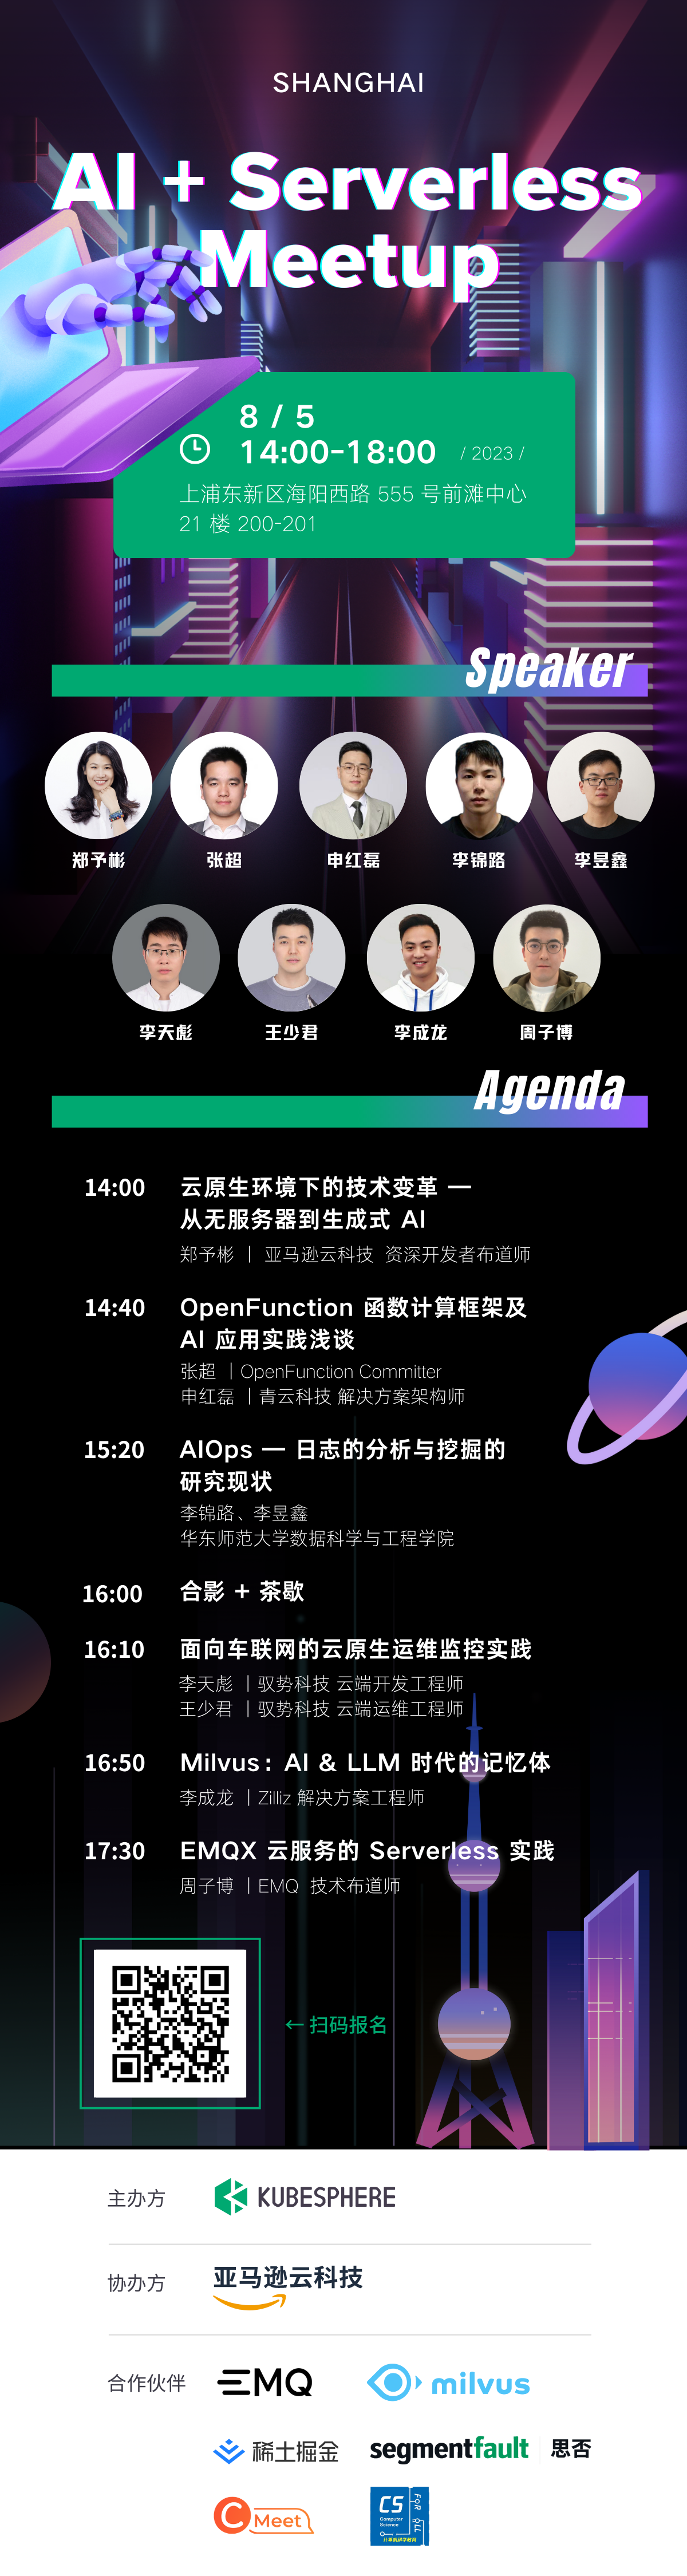 立即报名 | AI +Serverless Meetup 上海站 8 月 5 日等你相约！